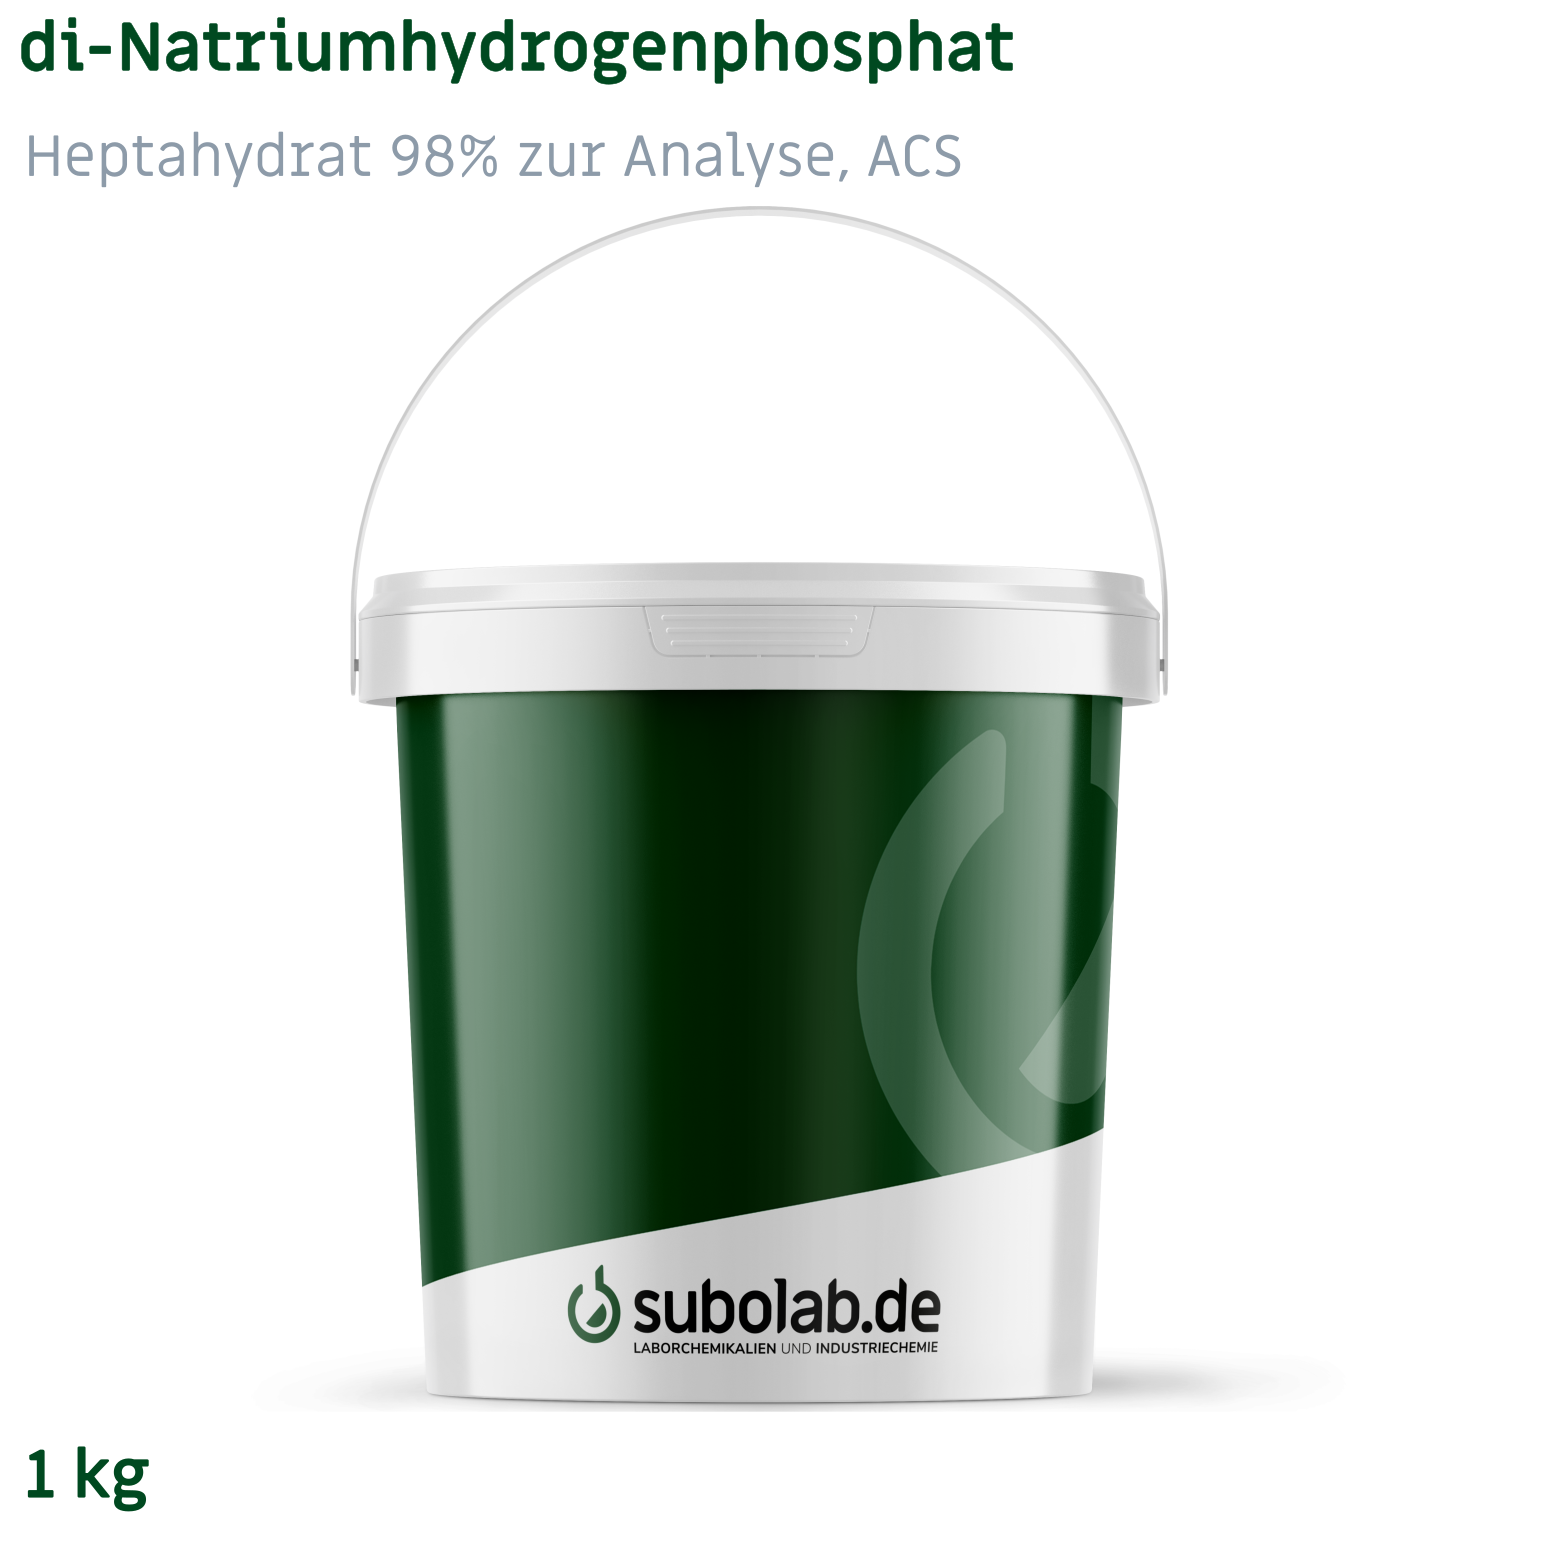 Bild von di-Natriumhydrogenphosphat - Heptahydrat 98% zur Analyse, ACS (1 kg)